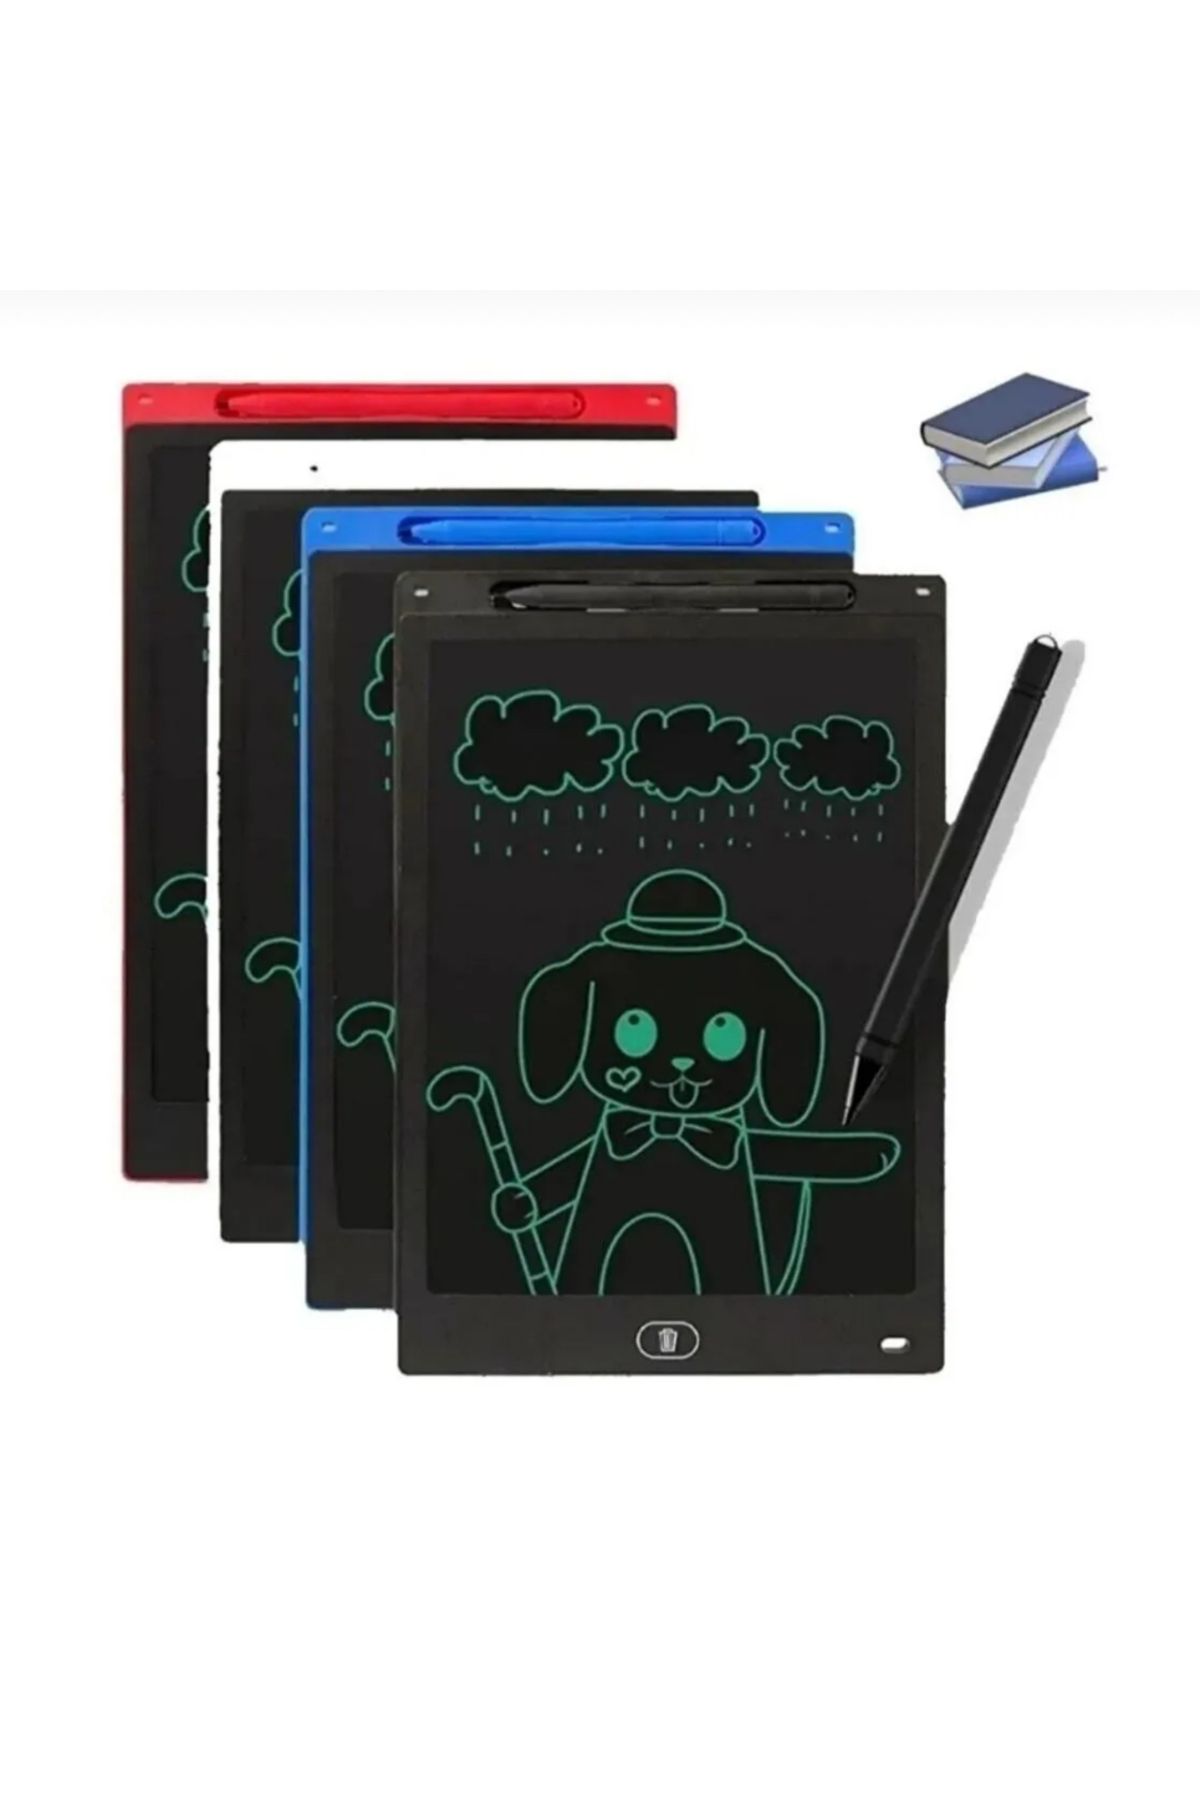 TİVENS Çok Renkli Tablet Lcd 8.5 Inç Dijital Kalemli Çizim Yazı Tahtası Grafik Not Yazma Eğitim Tableti